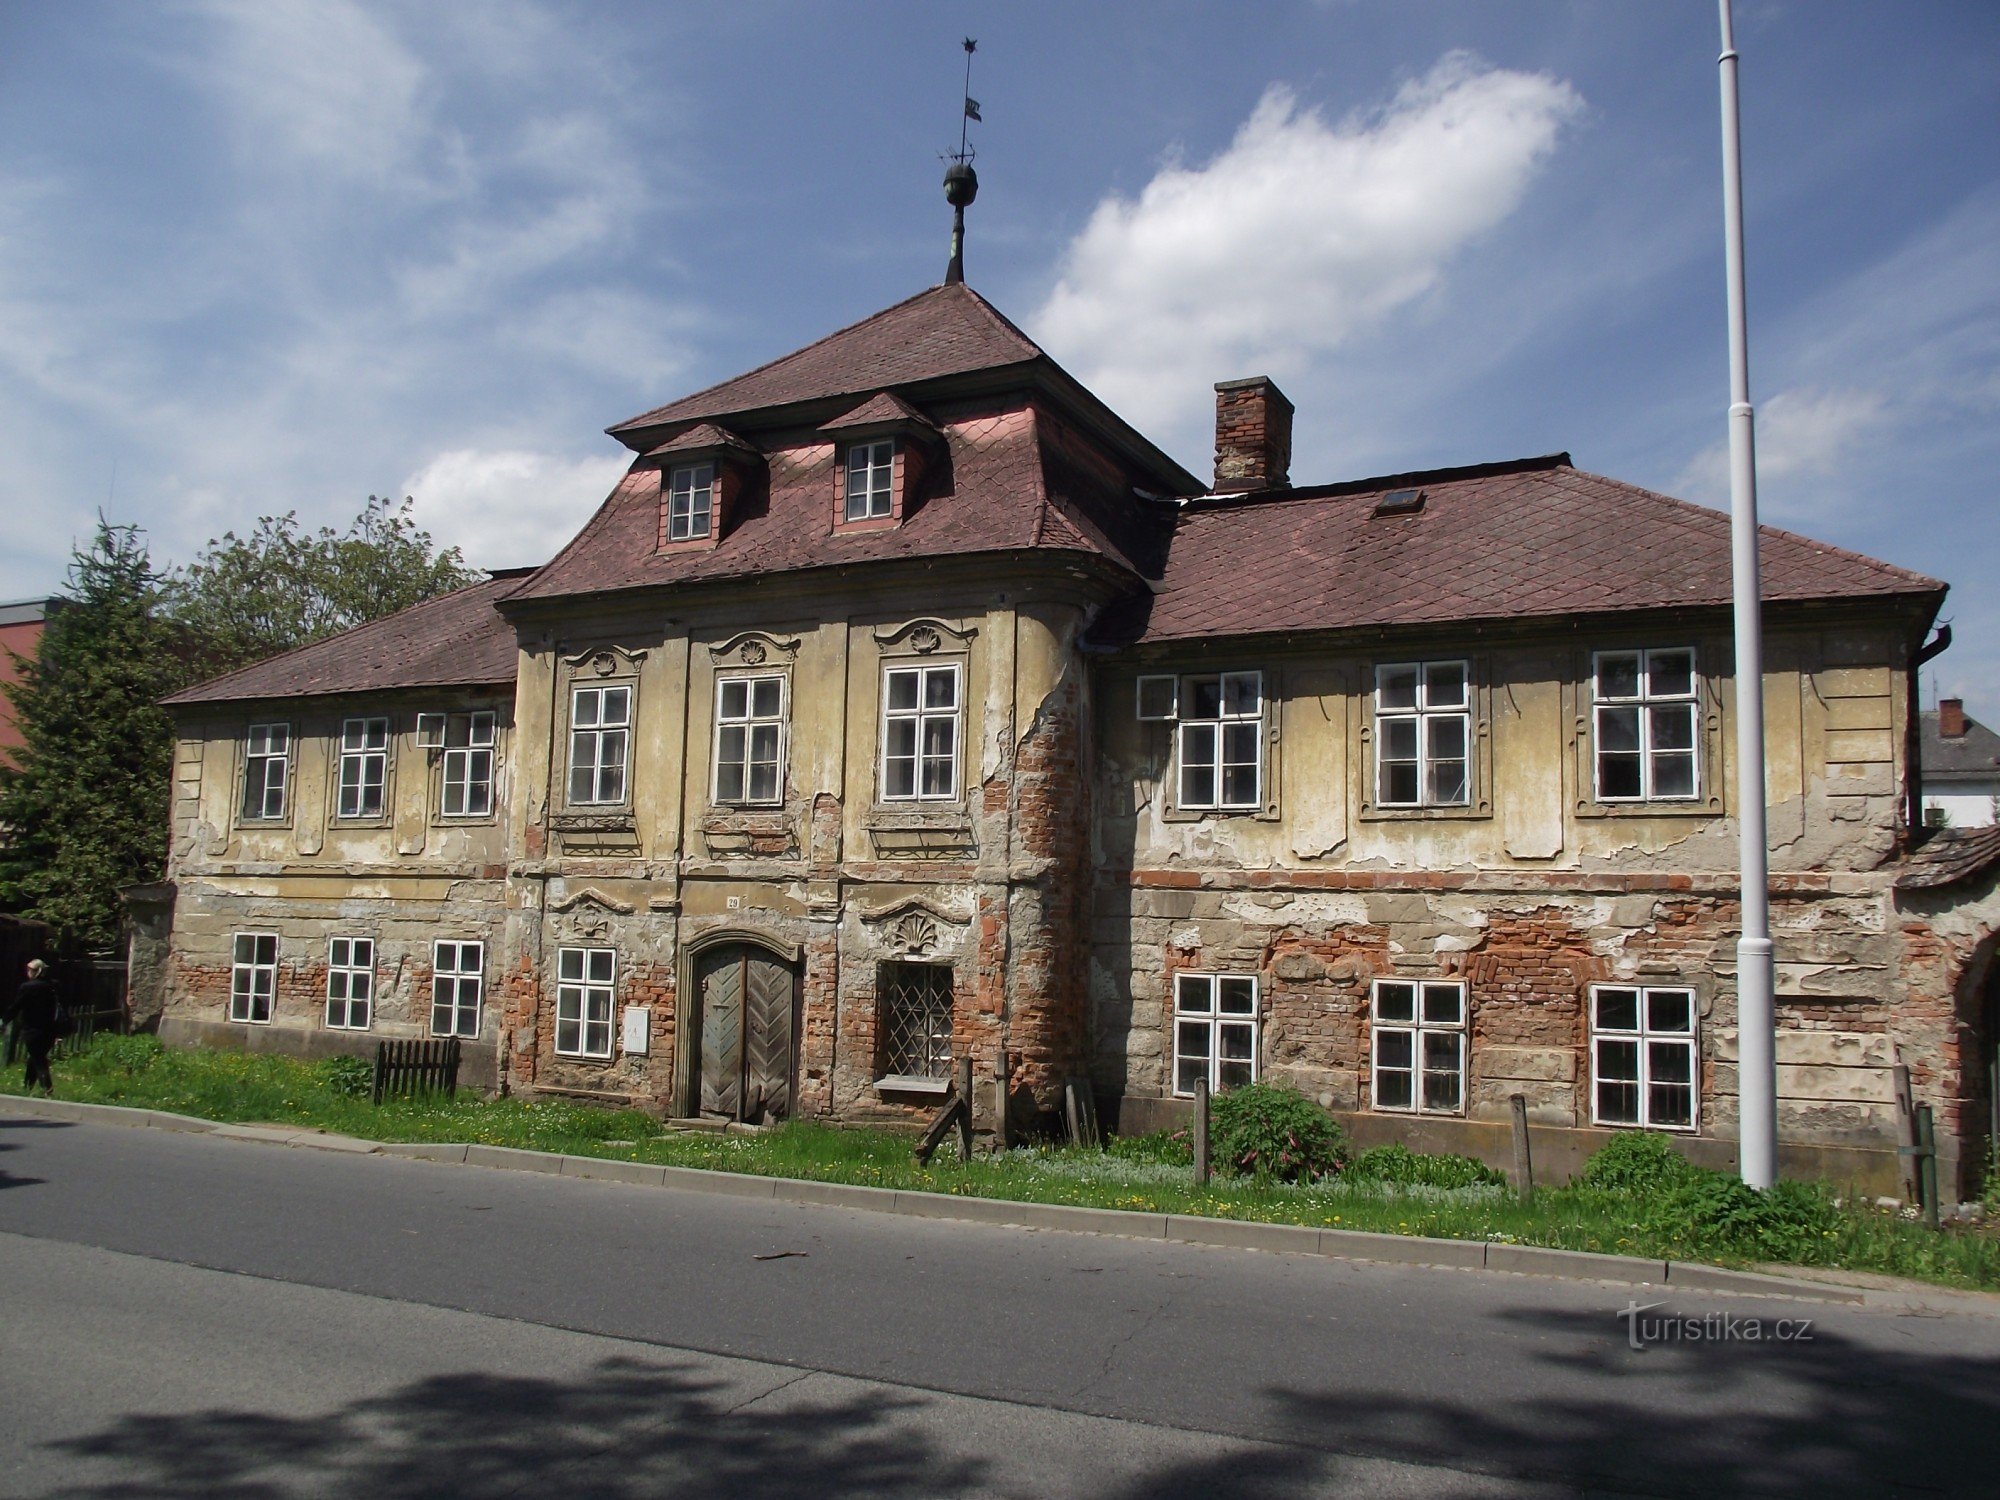 シュンペルク – バロック様式の工房